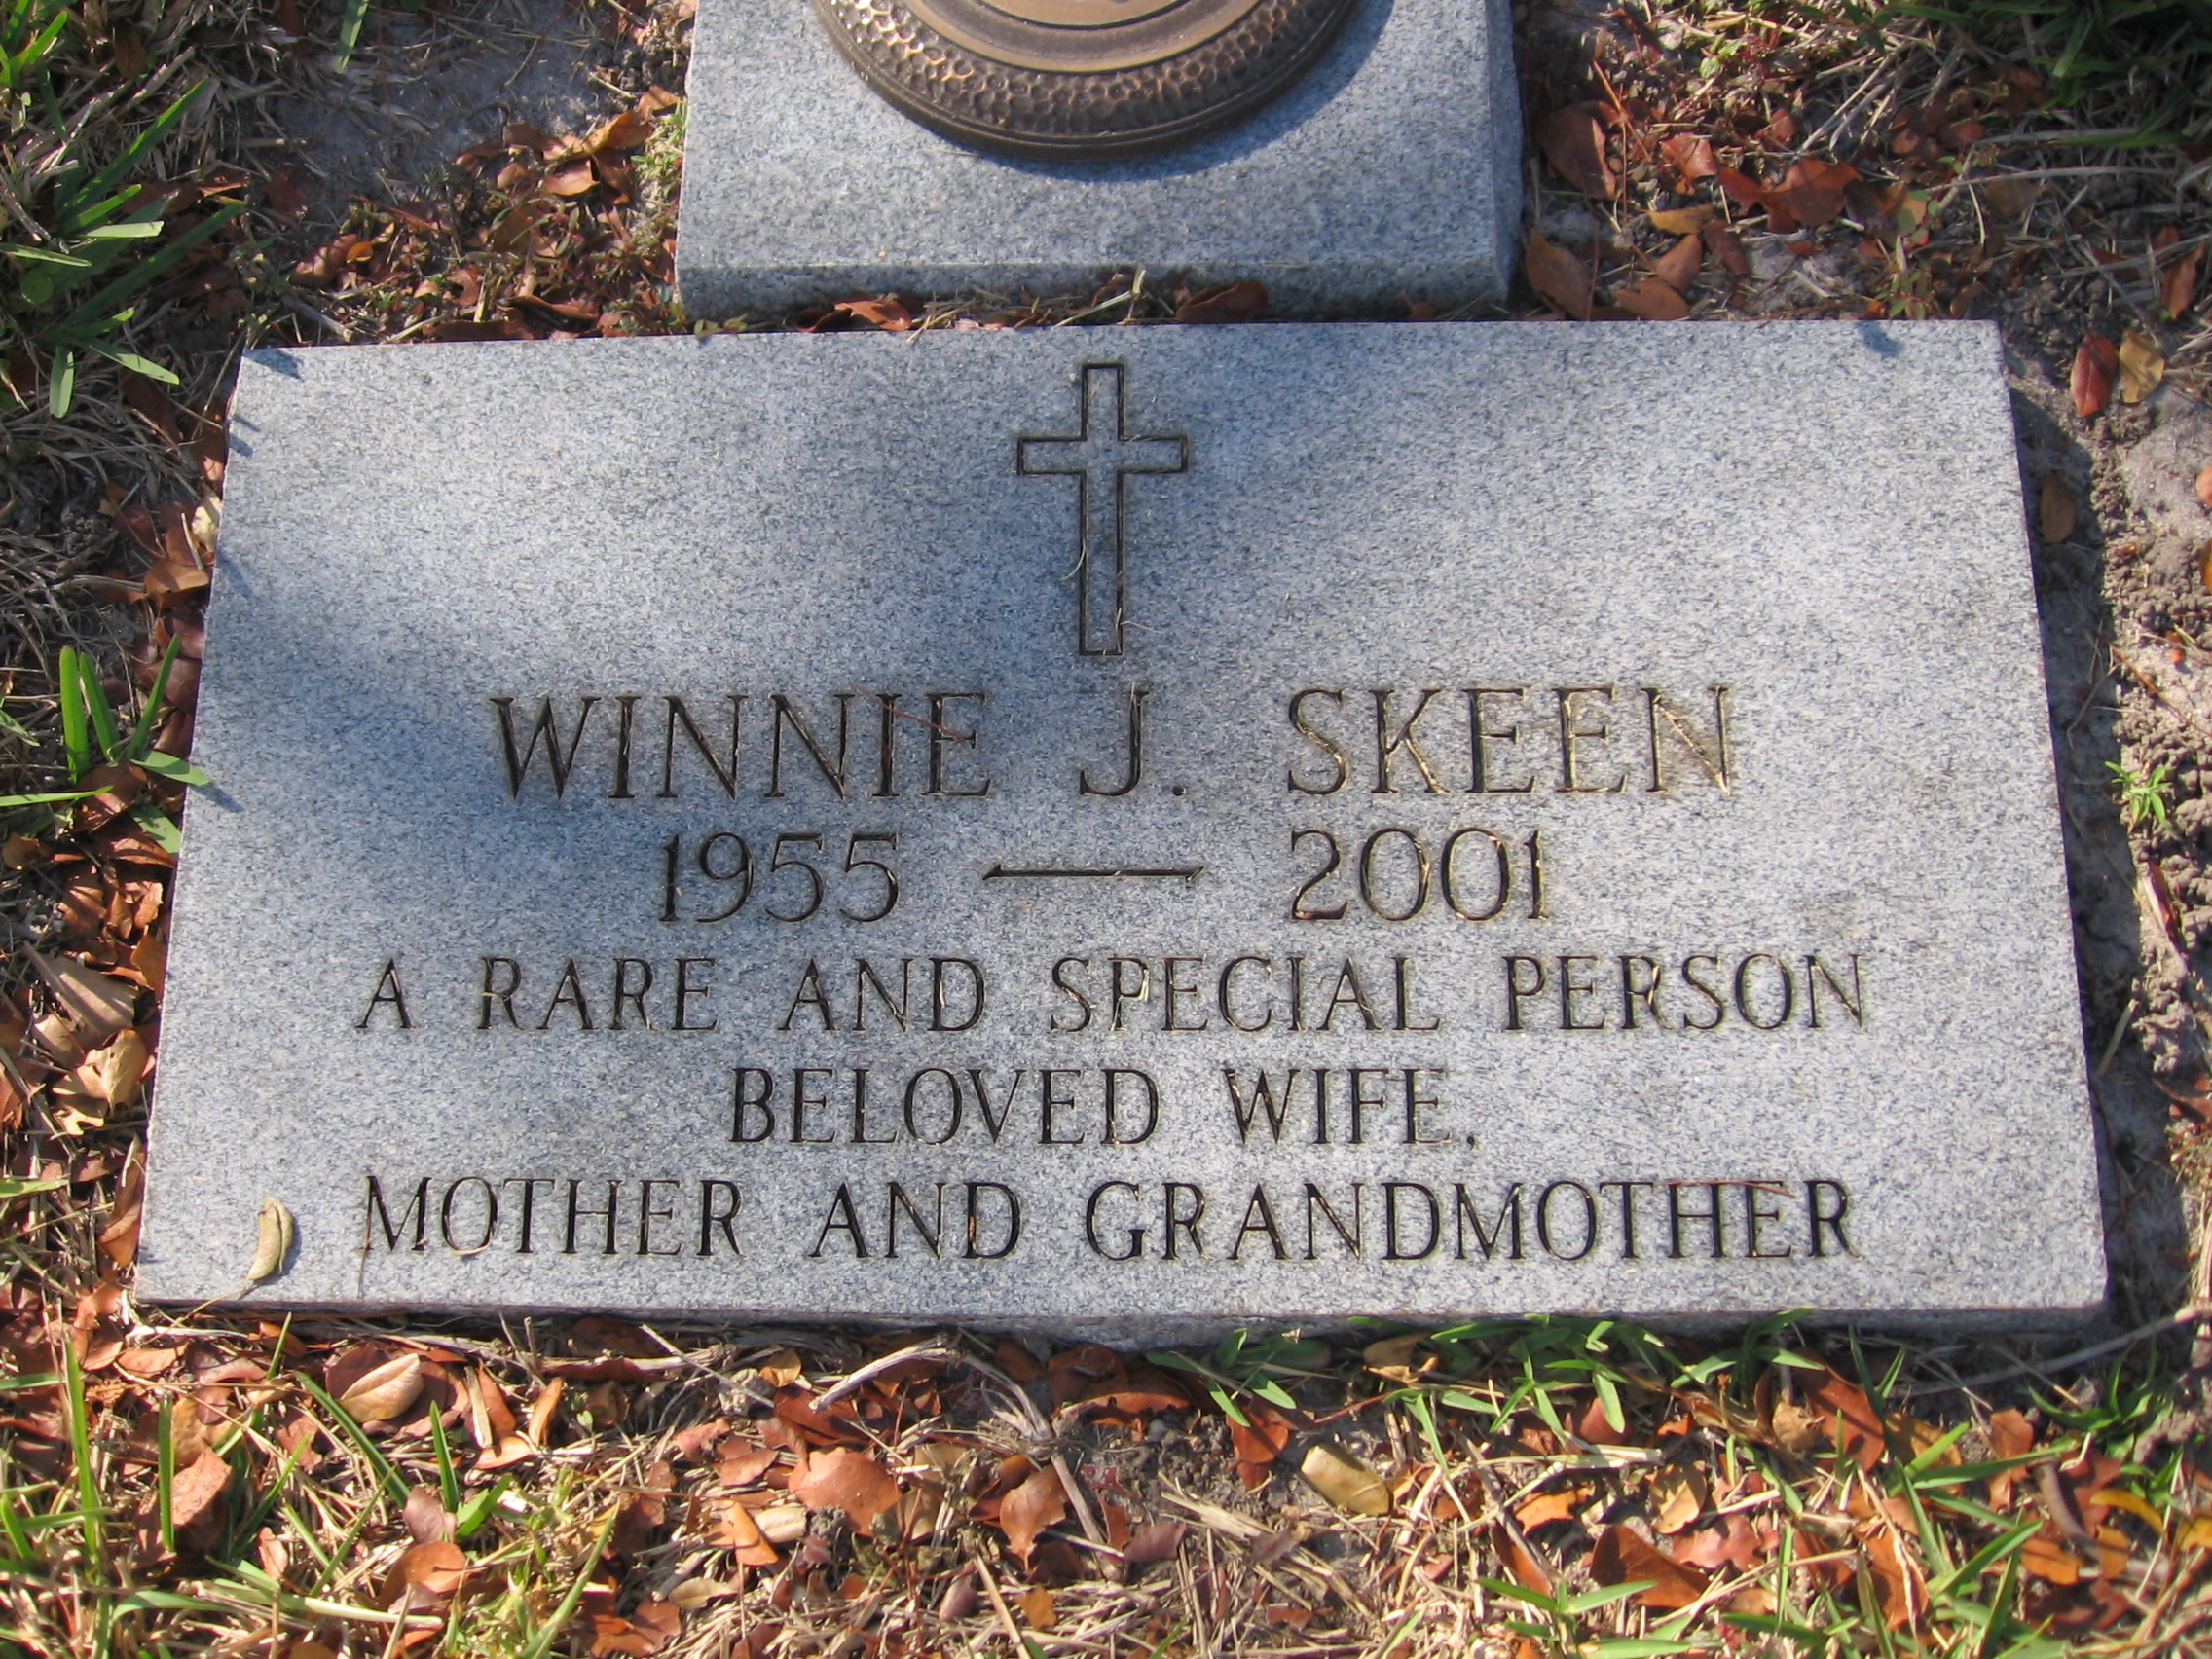 Winnie J Skeen